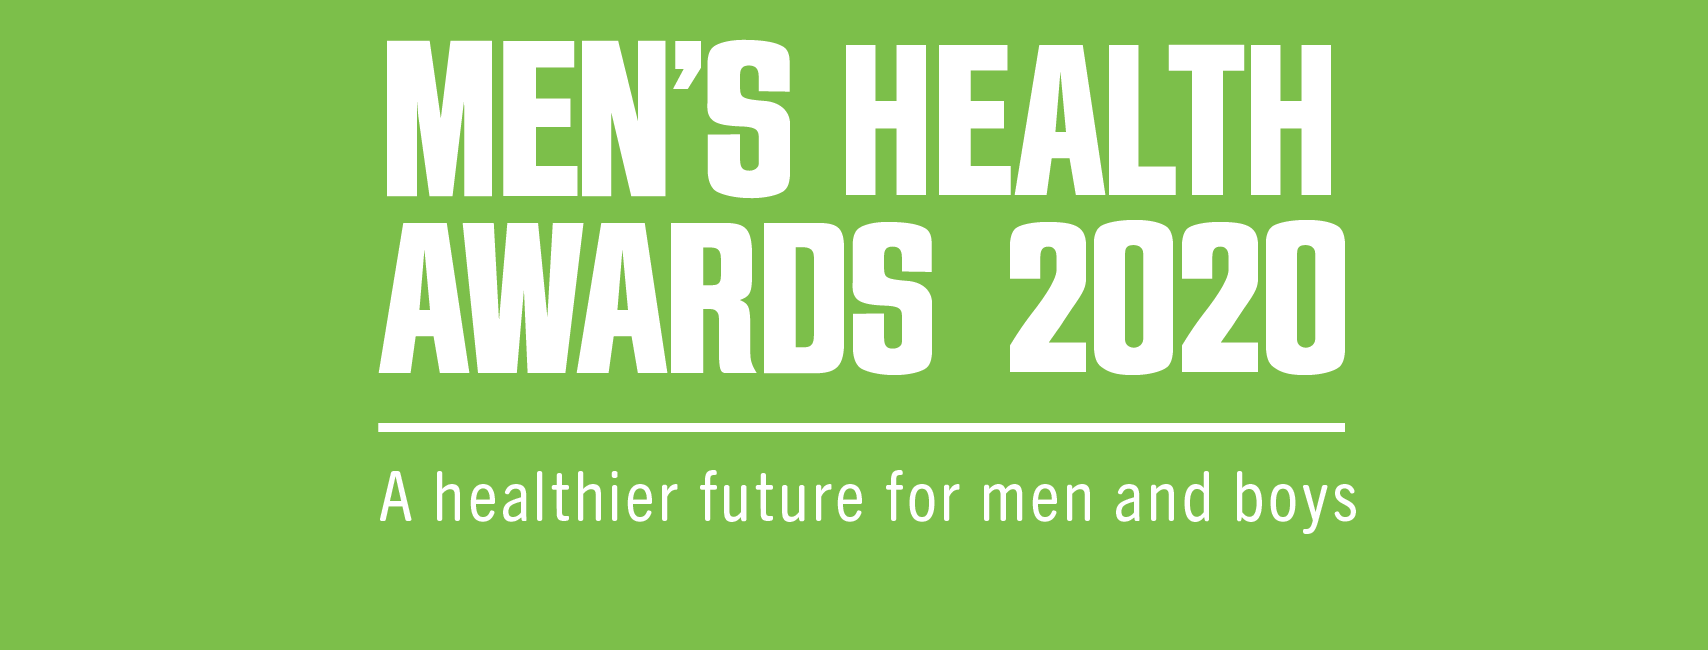 Week 3 Men's Health Week Men's Health Awards » Men’s Health Connected